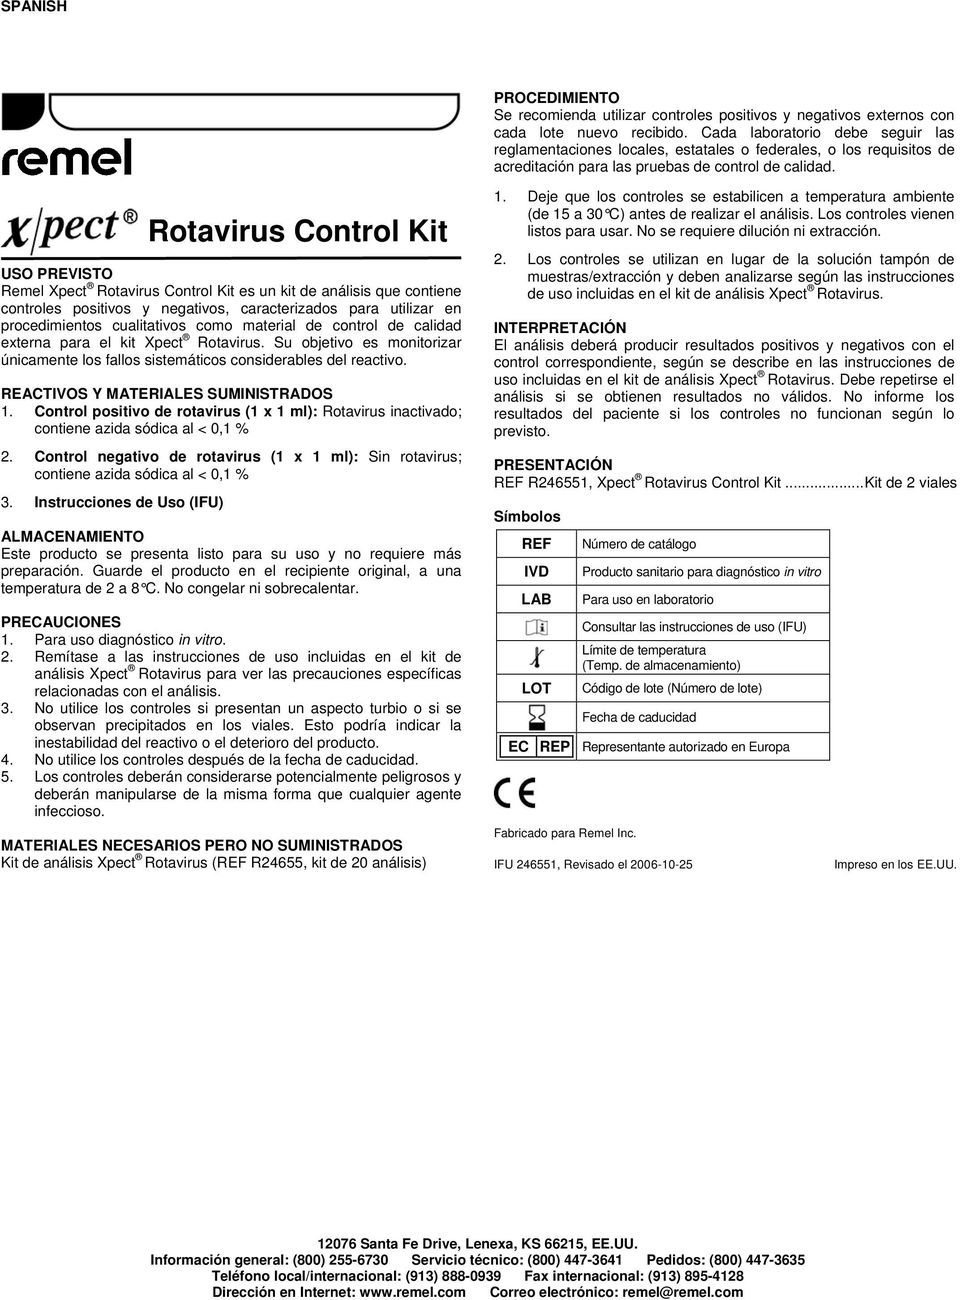 Rotavirus Control Kit USO PREVISTO Remel Xpect Rotavirus Control Kit es un kit de análisis que contiene controles positivos y negativos, caracterizados para utilizar en procedimientos cualitativos